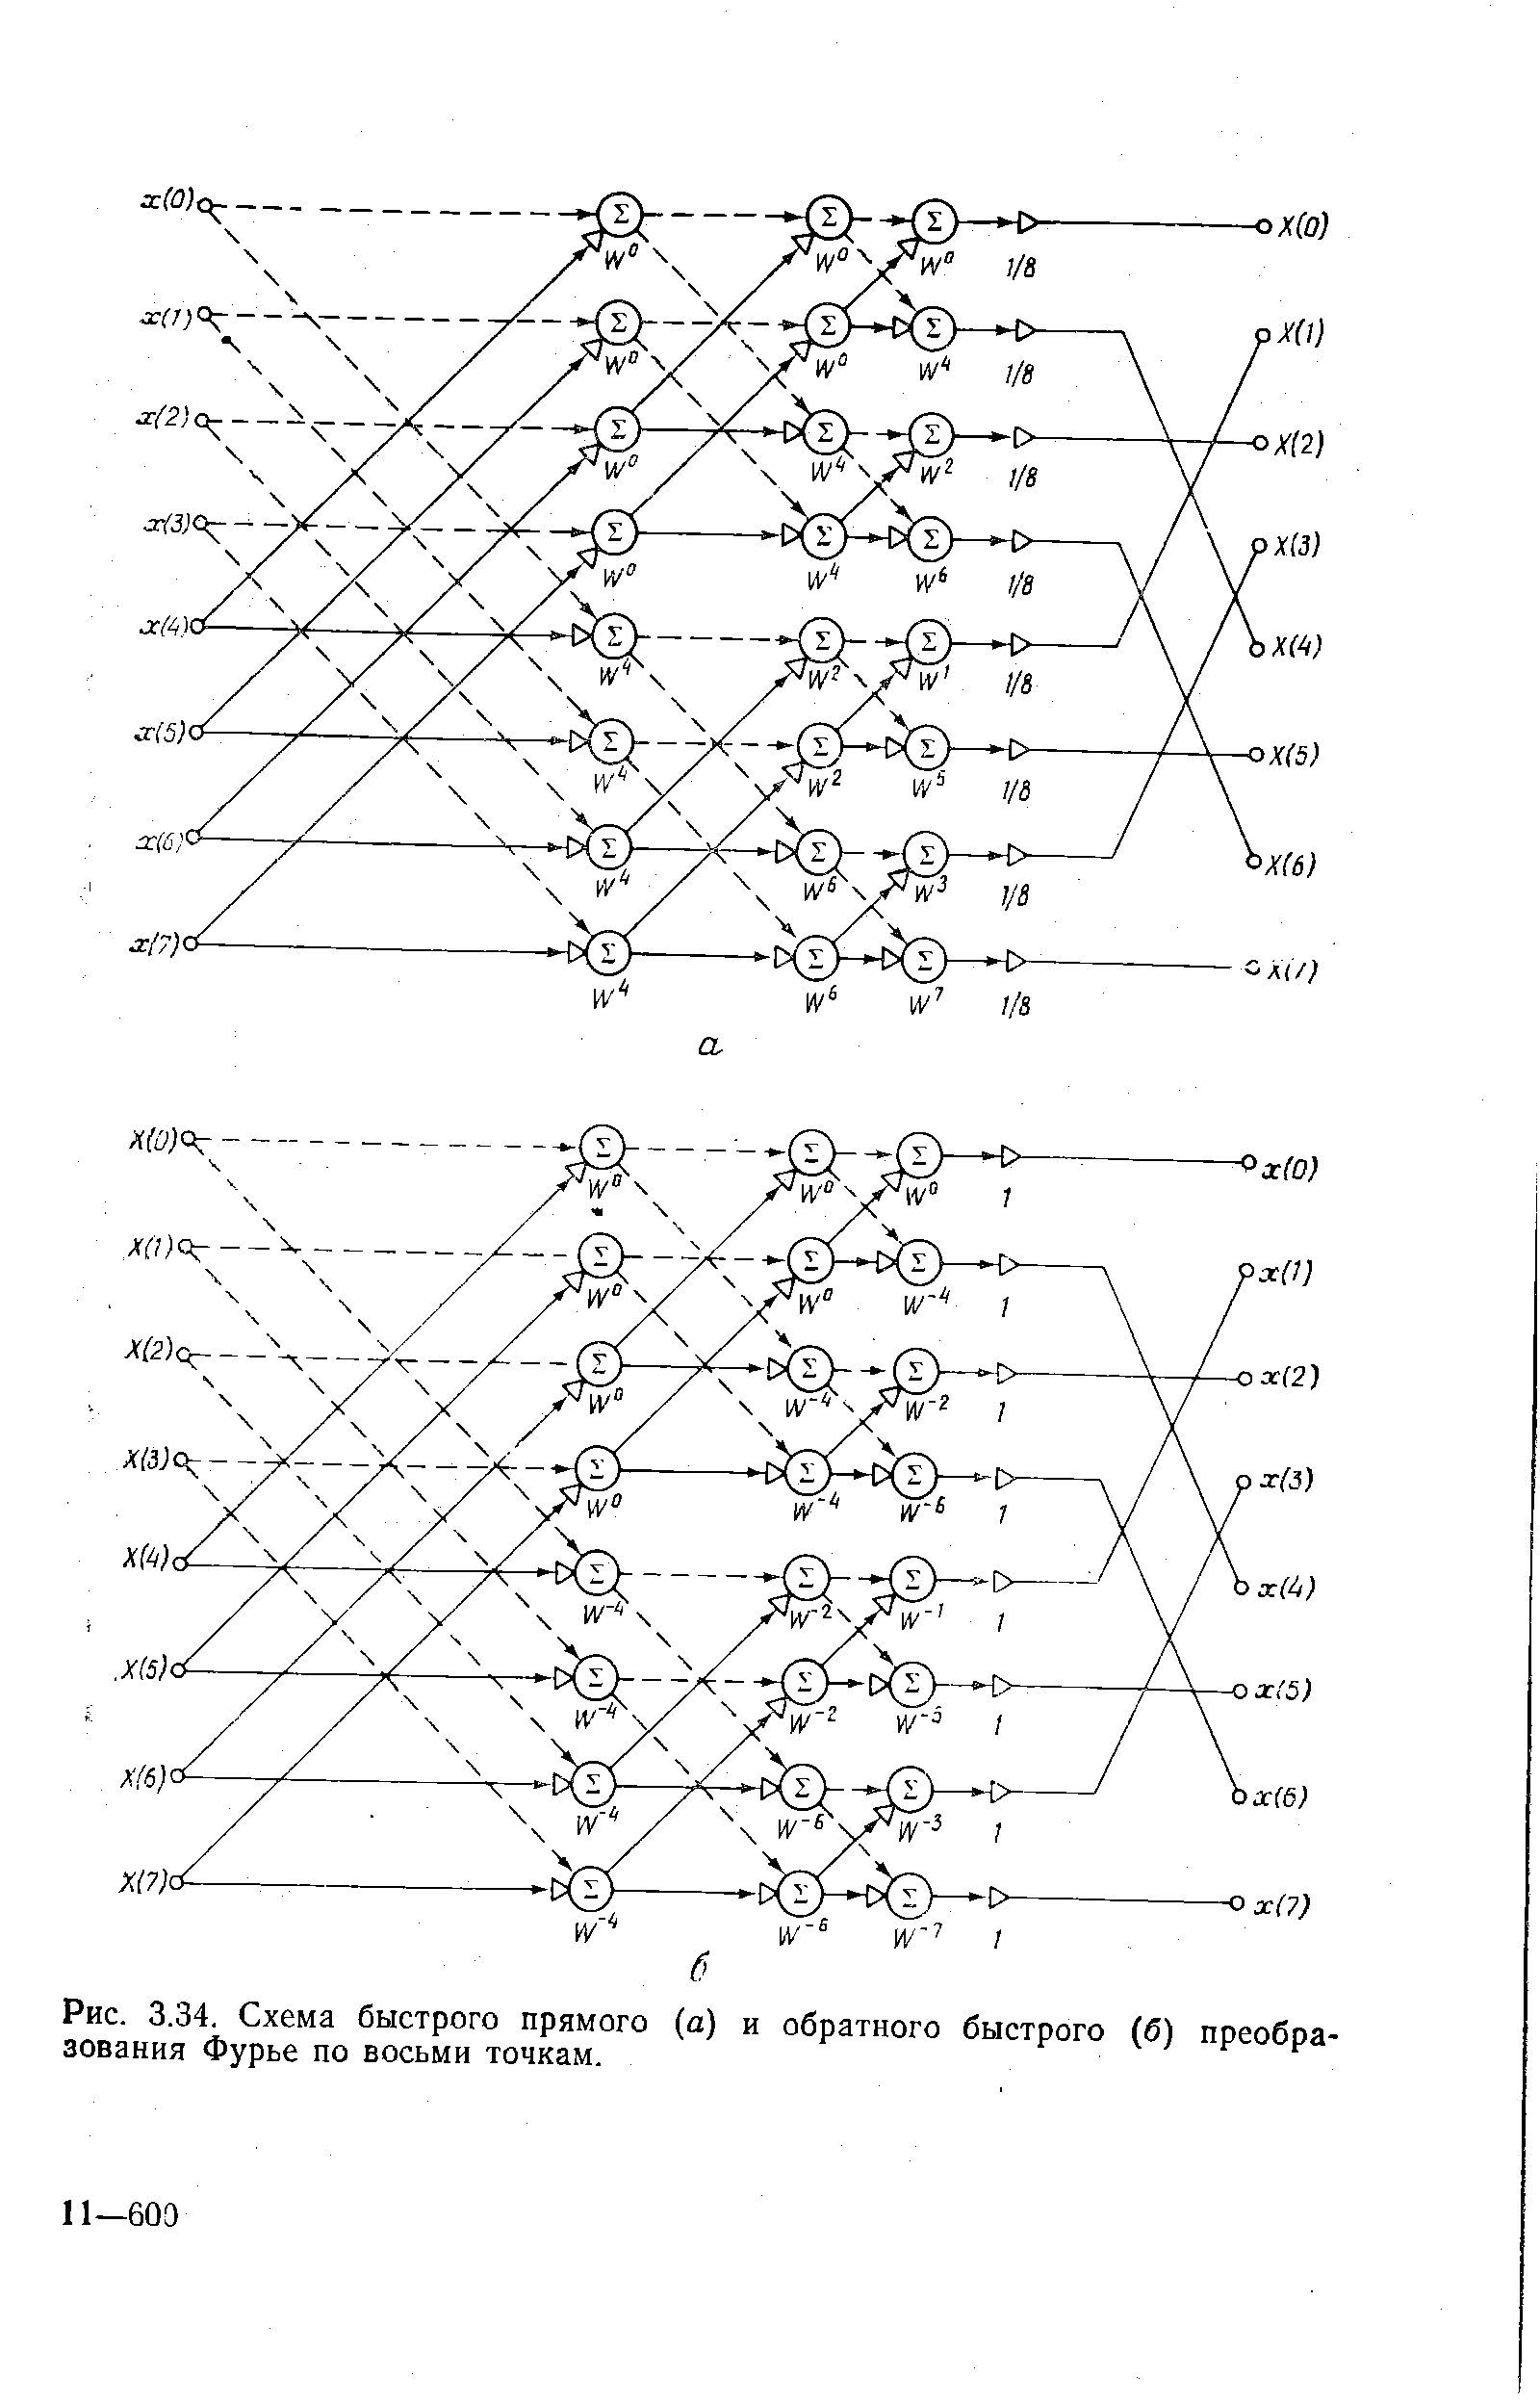 Рис. 3.34. Схема быстрого прямого (а) и обратного быстрого (б) преобразования Фурье по восьми точкам.